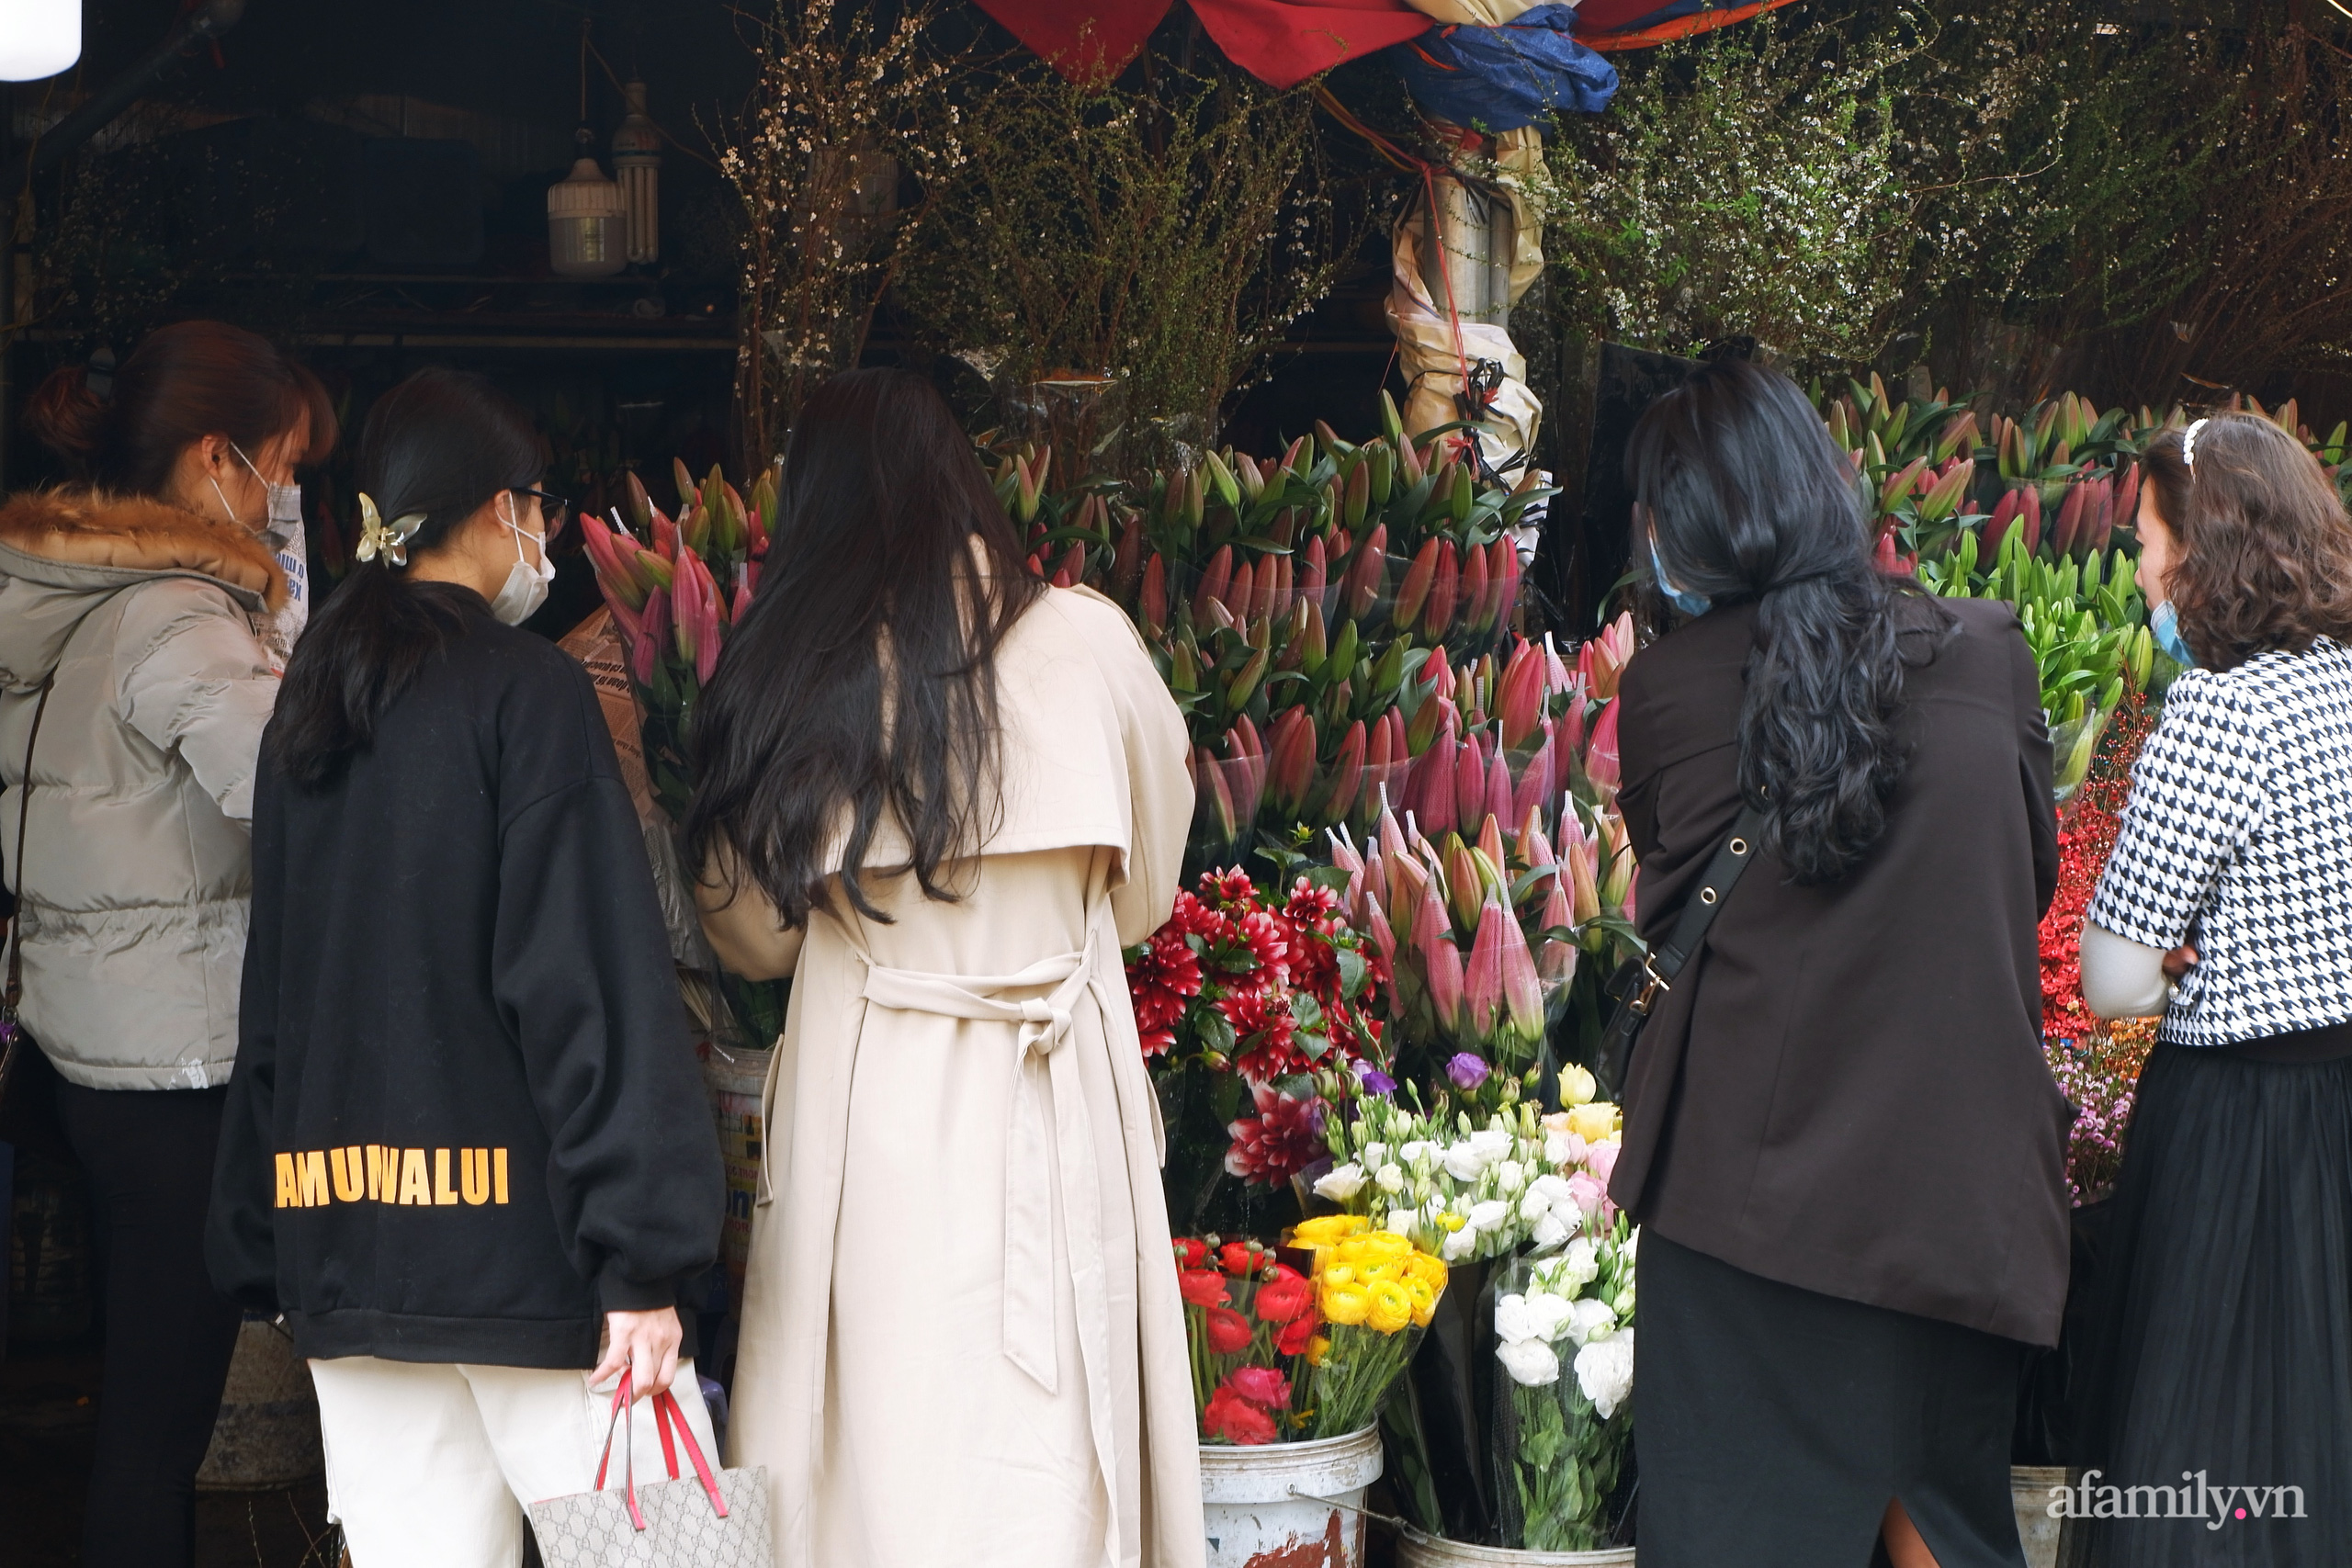 Chợ hoa lớn nhất Hà Nội nhộn nhịp, giá hoa tăng nhẹ trước thềm Tết Nguyên đán 2021  - Ảnh 7.